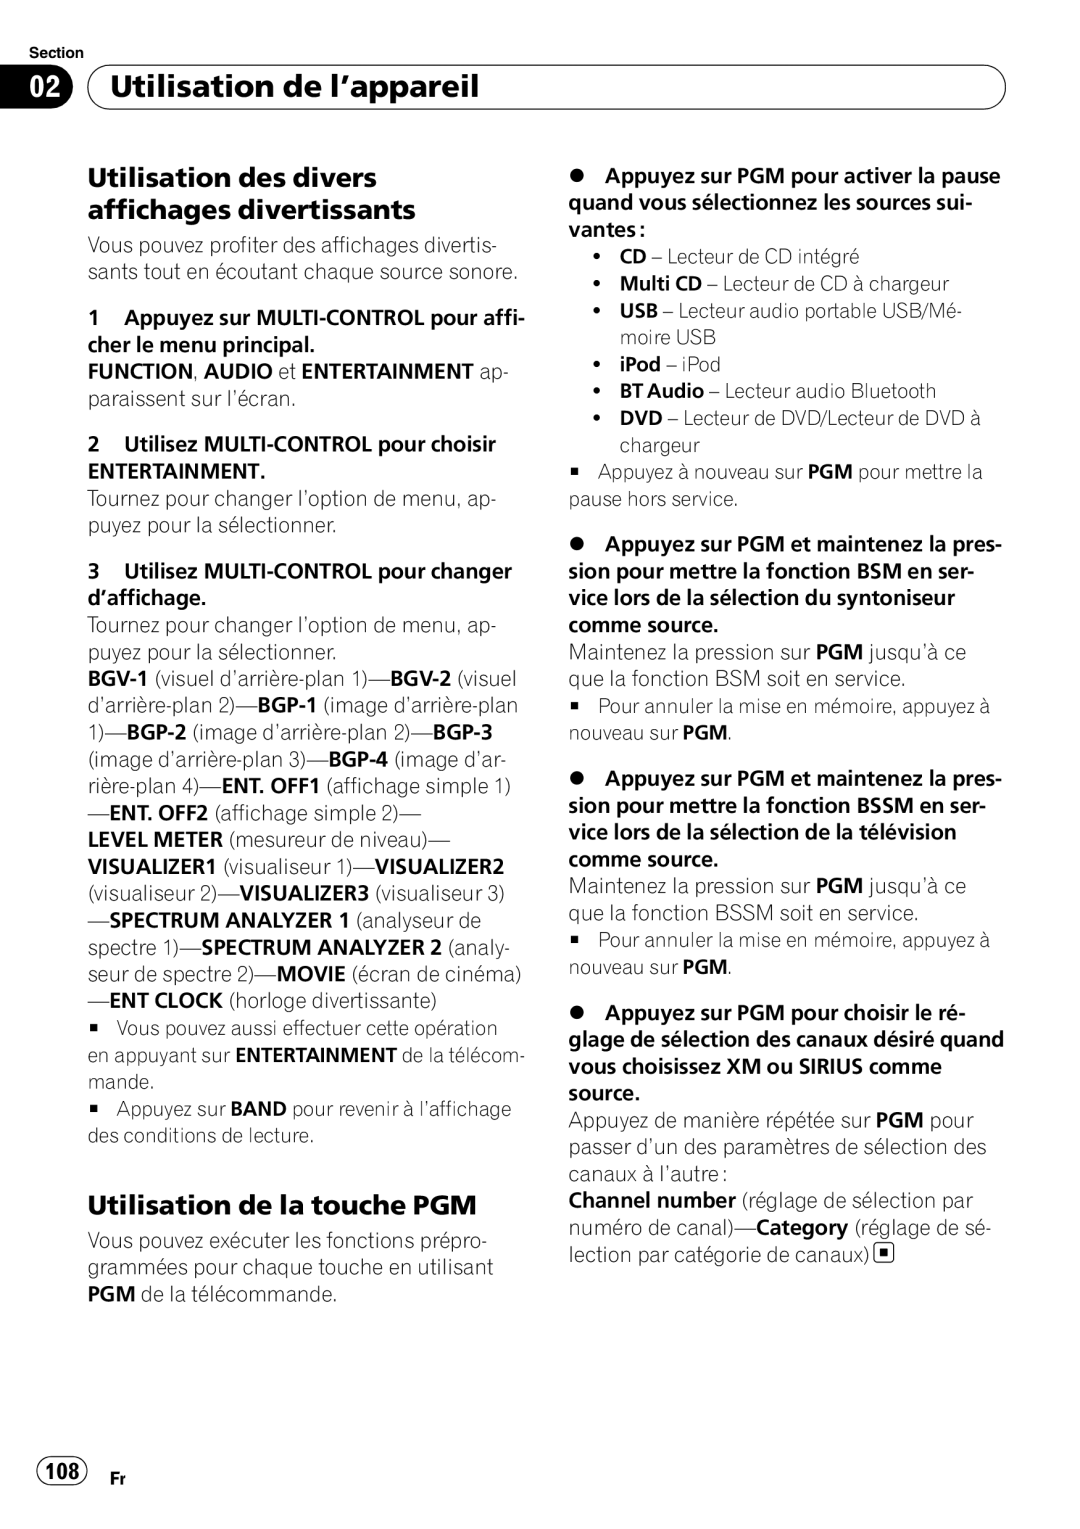 Pioneer DEH-P690UB operation manual Utilisation des divers affichages divertissants, Utilisation de la touche PGM, 108 Fr 